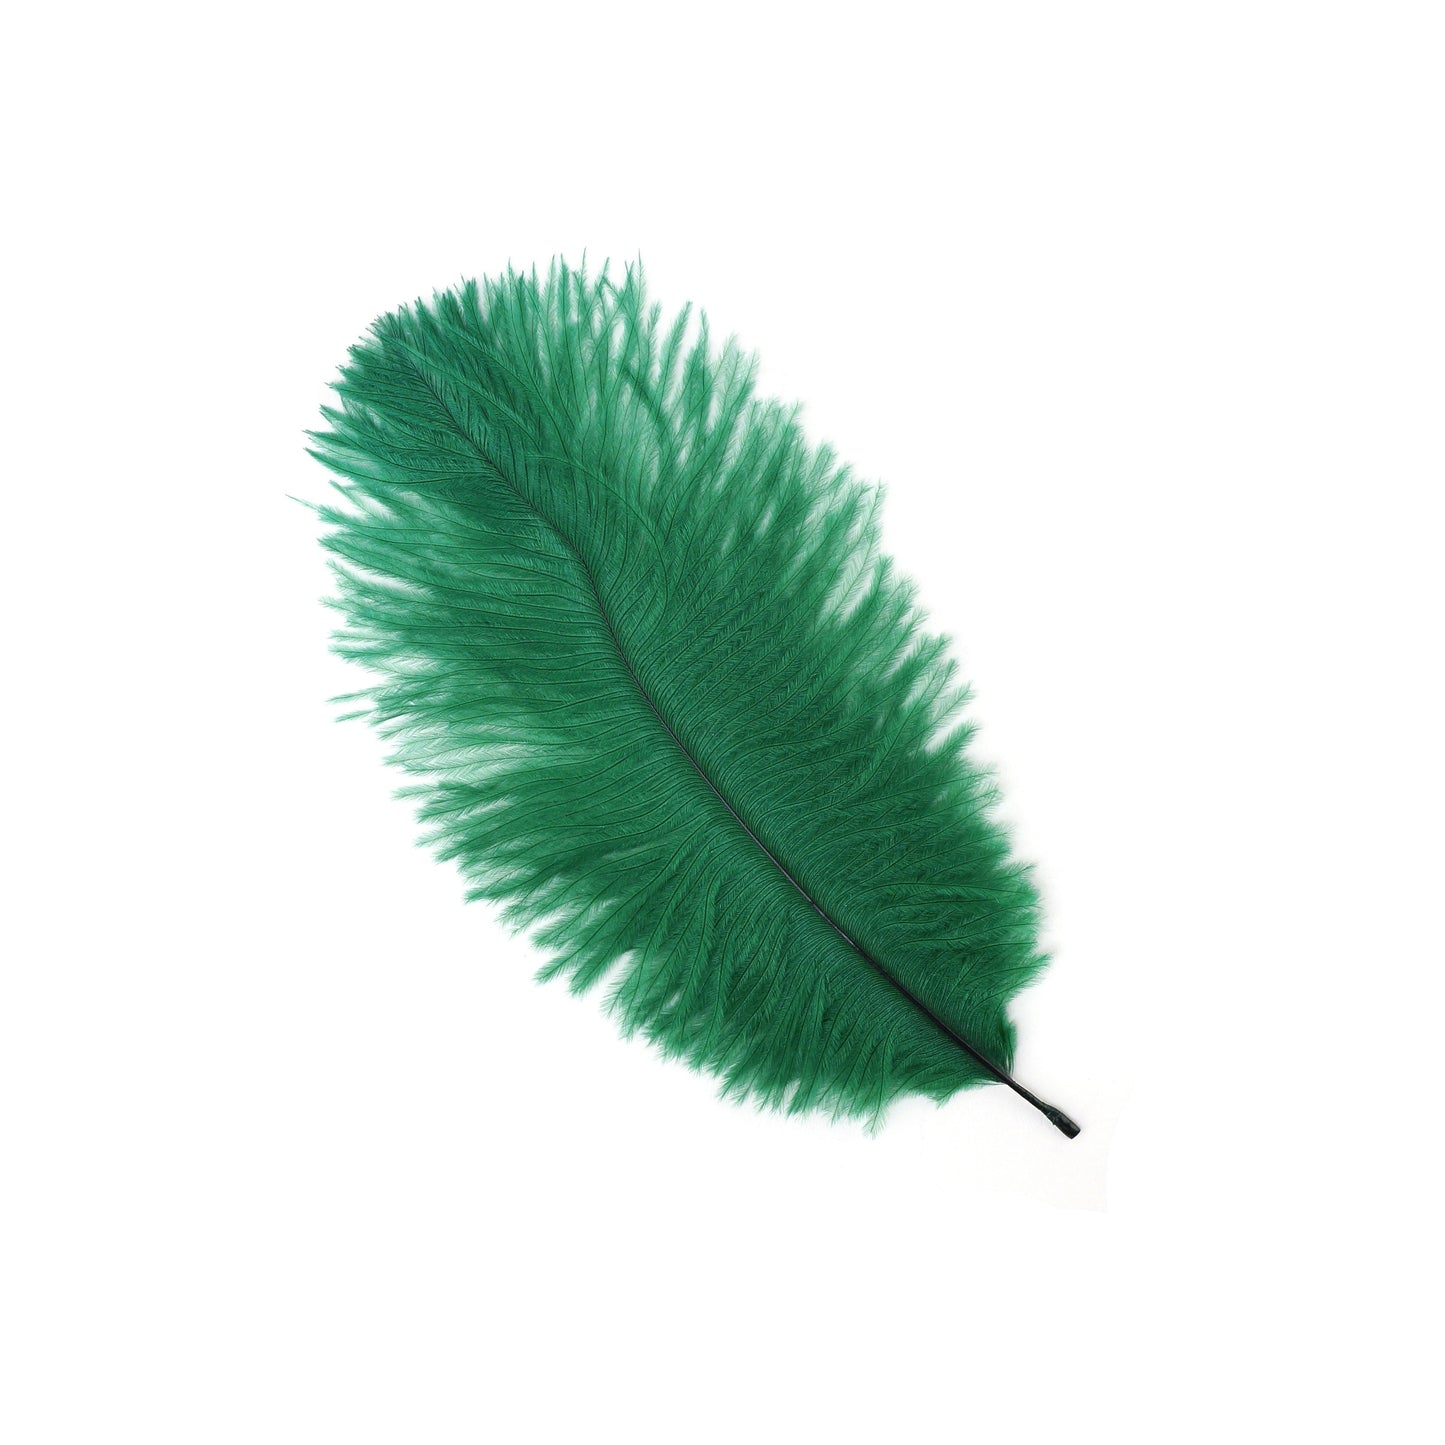 Bulk Feather Ostrich Drabs - 4-8" 1/4 lb Emerald Green